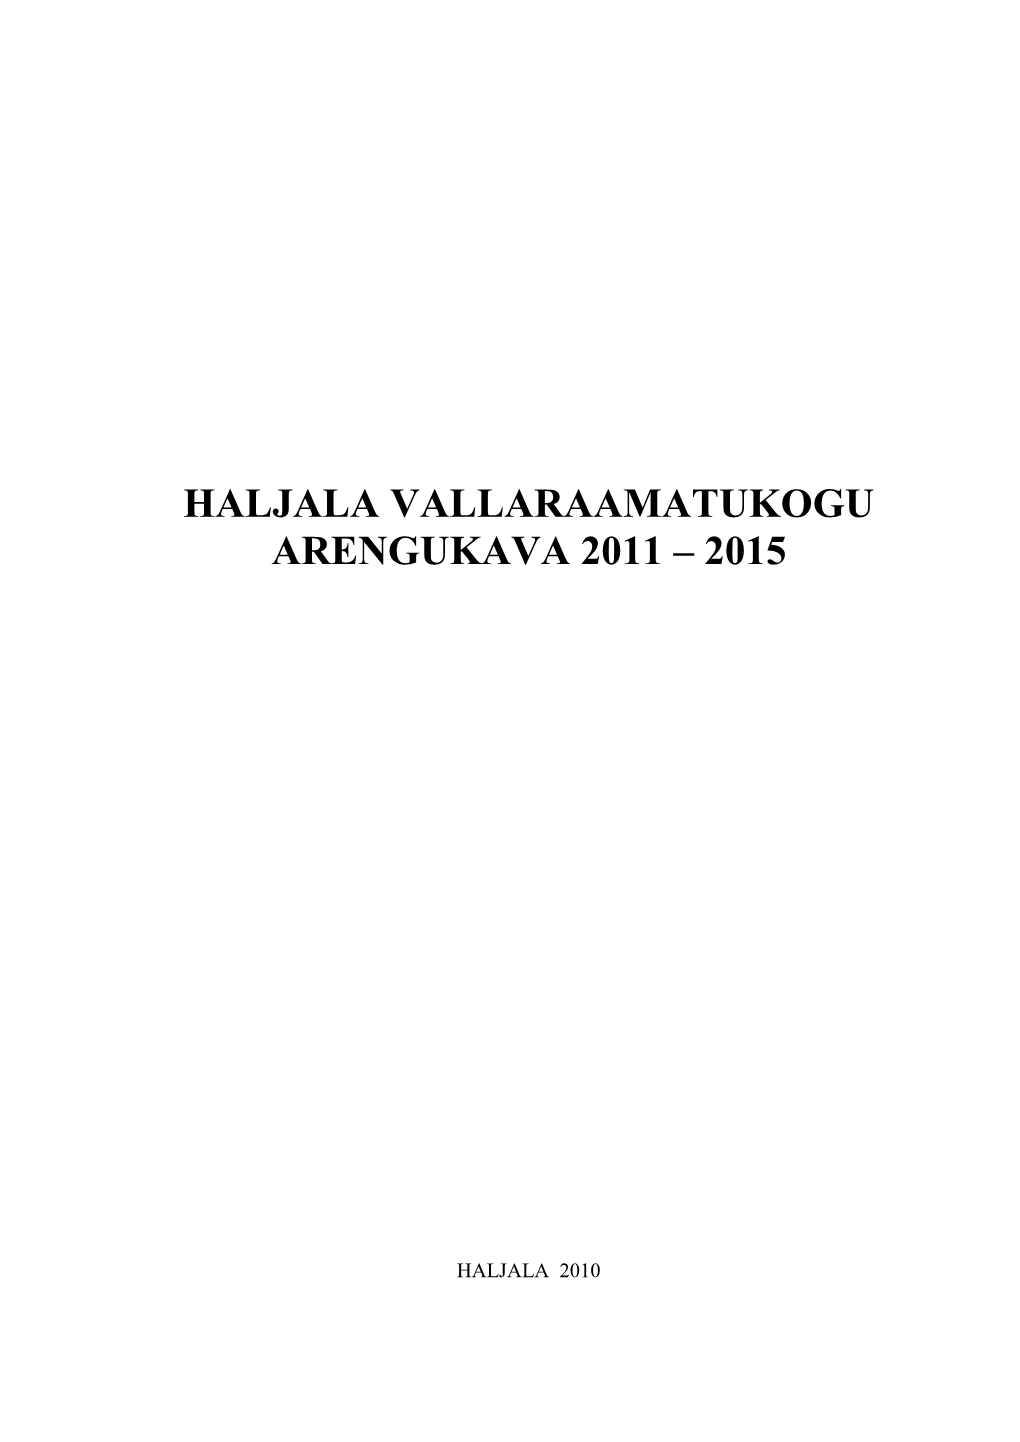 Haljala Vallaraamatukogu Arengukava 2011 – 2015